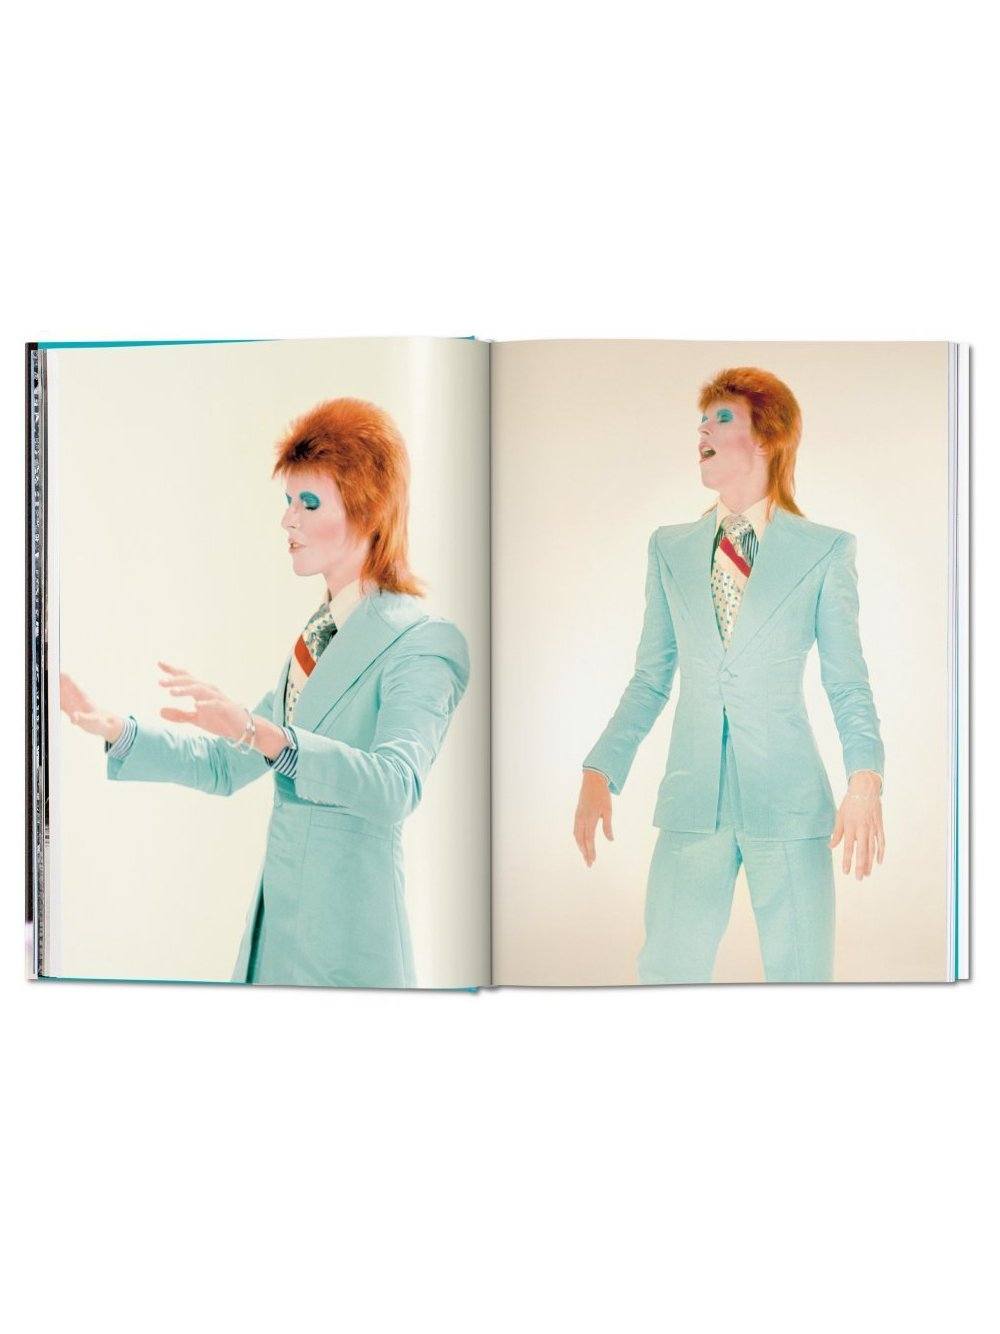 TASCHEN The Rise of David Bowie. 1972–1973 - MAISONDEFASHION.COM